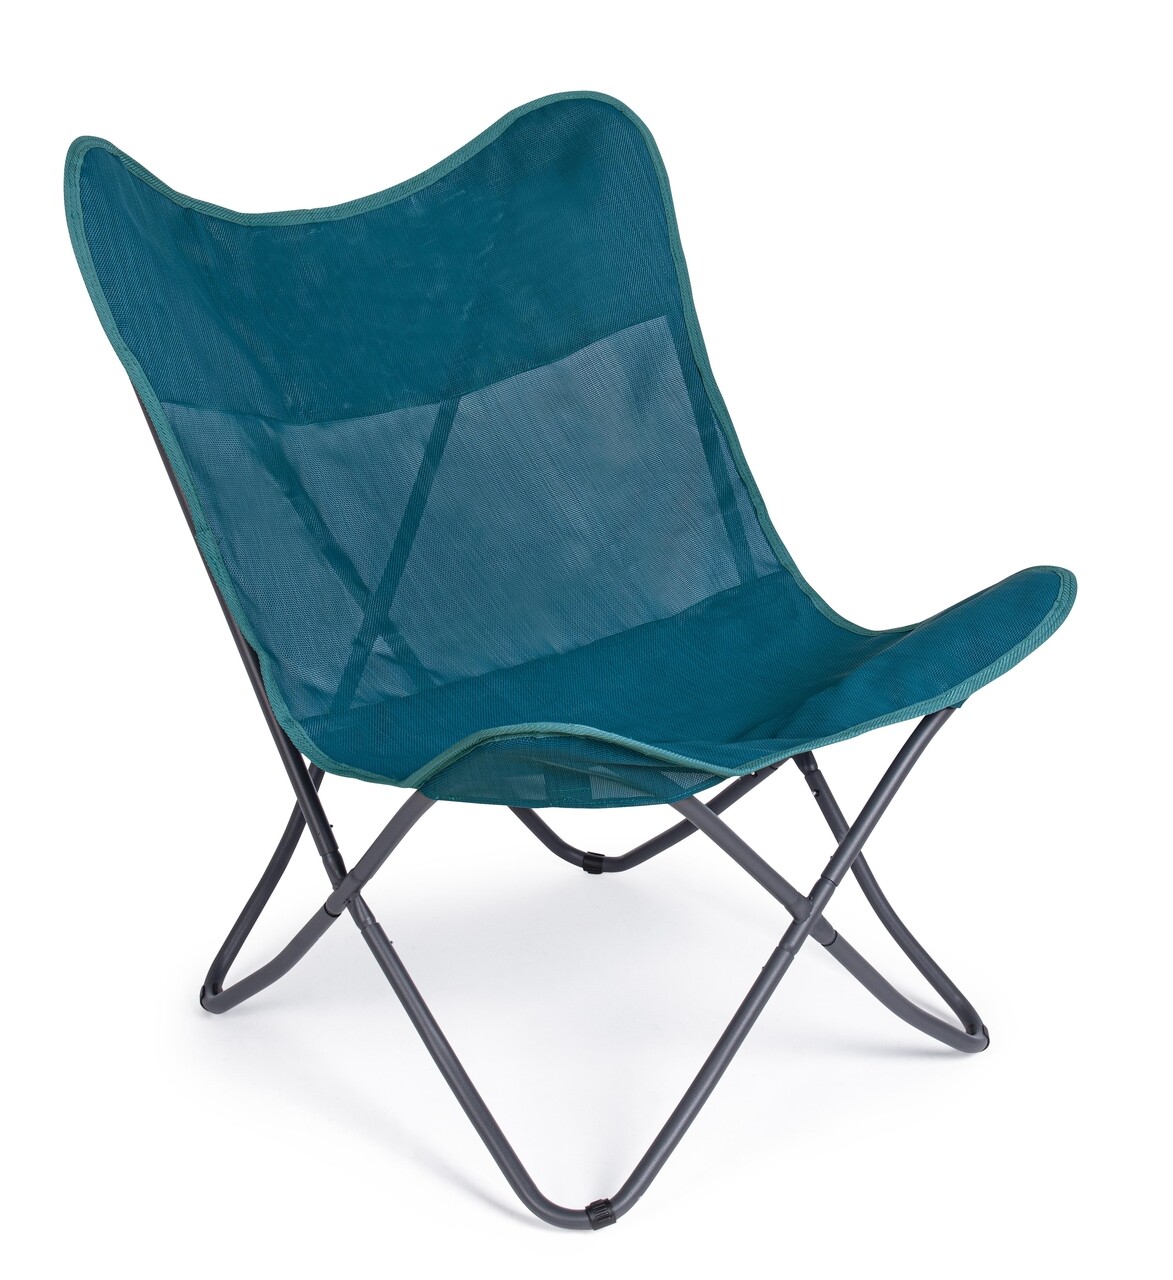 Butterfly gabicce kerti szék, bizzotto, 77.5 x 81 x 89 cm, acél/textil 2x1, kék